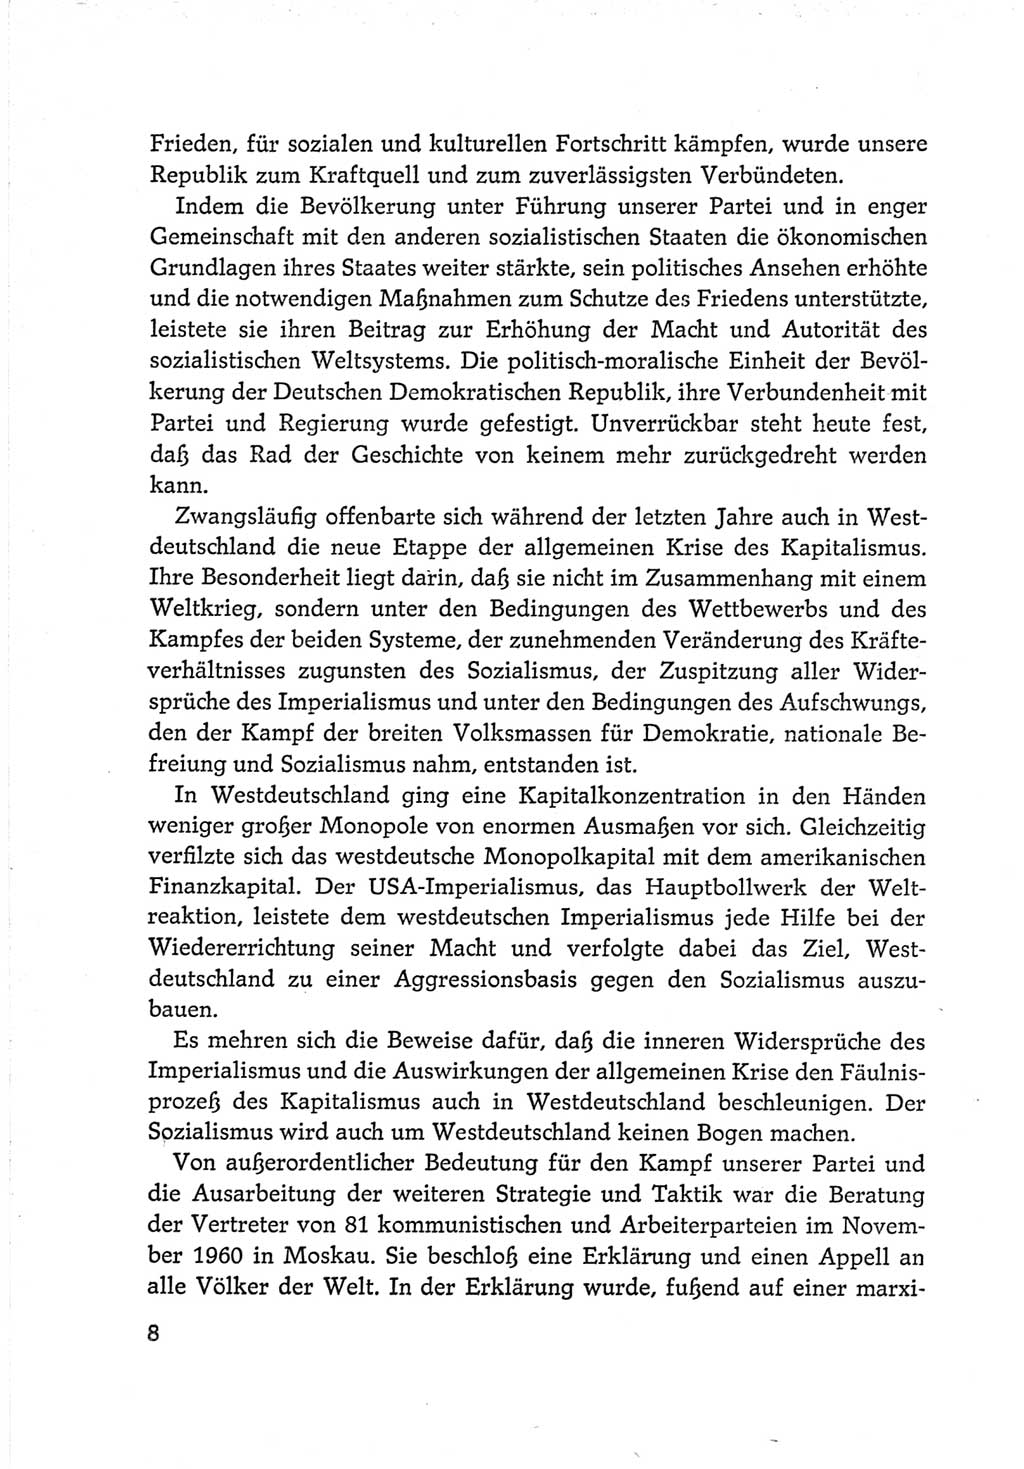 Protokoll der Verhandlungen des Ⅵ. Parteitages der Sozialistischen Einheitspartei Deutschlands (SED) [Deutsche Demokratische Republik (DDR)] 1963, Band Ⅳ, Seite 8 (Prot. Verh. Ⅵ. PT SED DDR 1963, Bd. Ⅳ, S. 8)